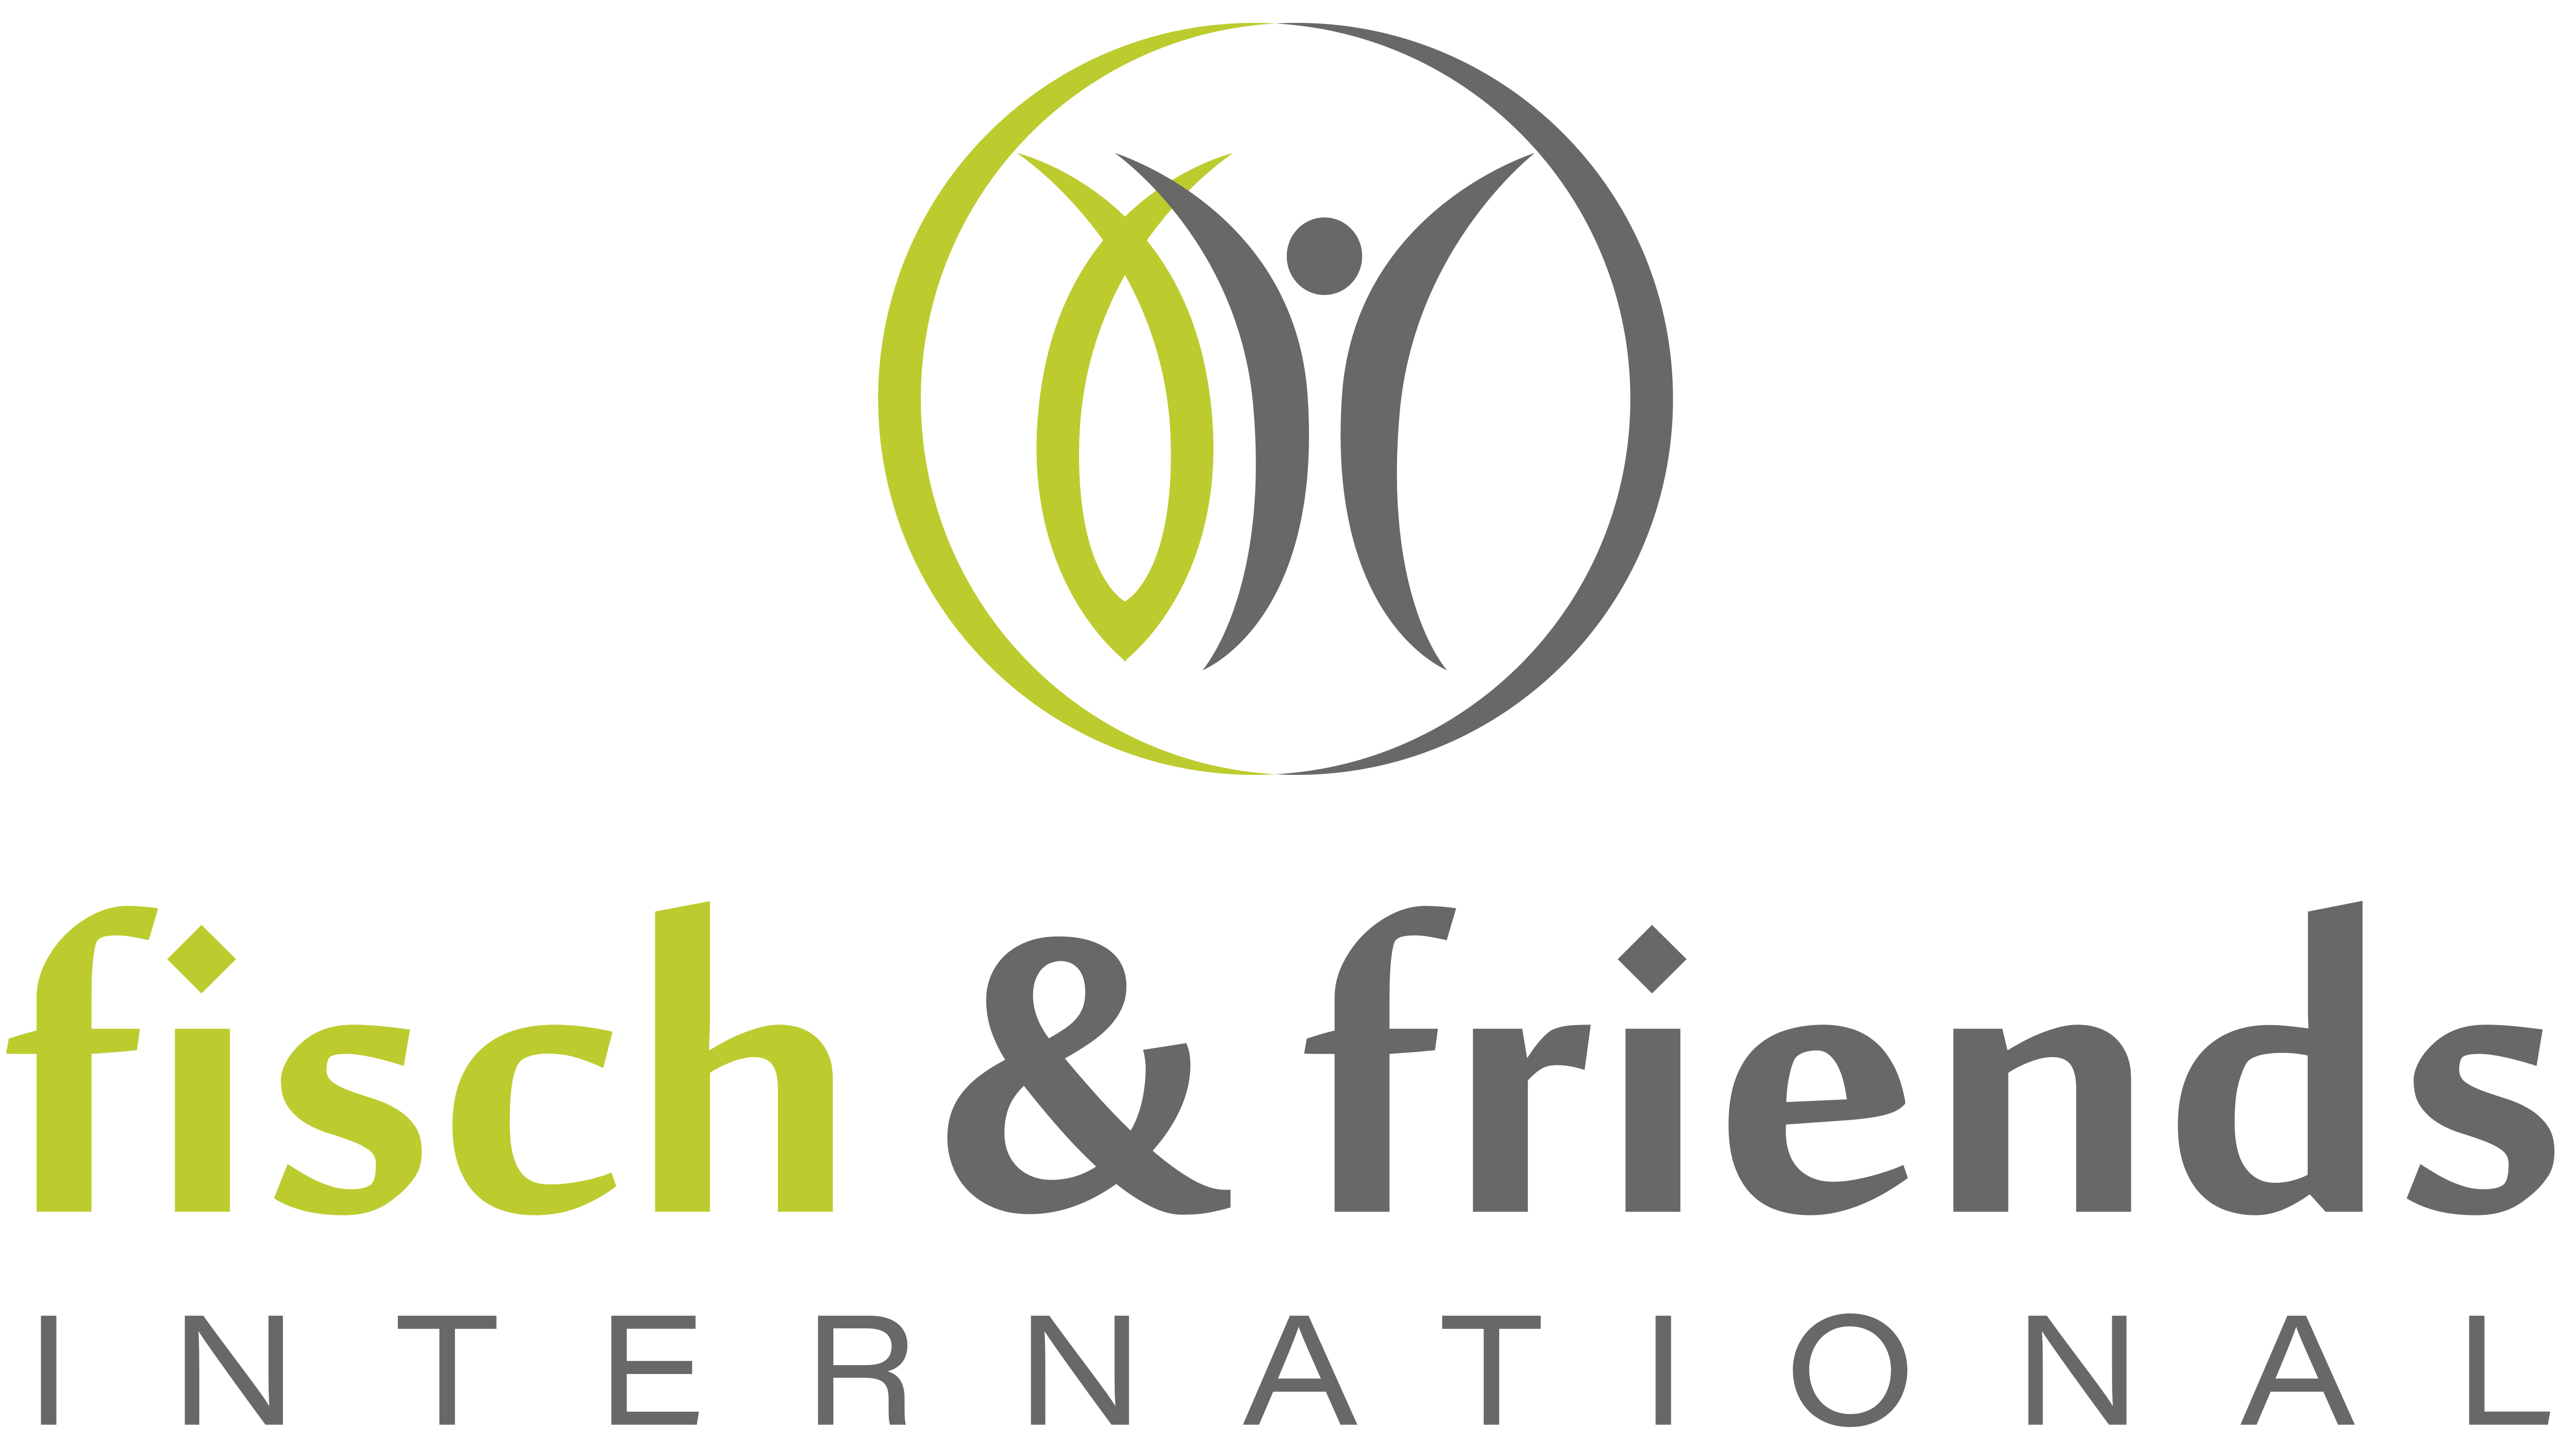 Fisch and Friends International